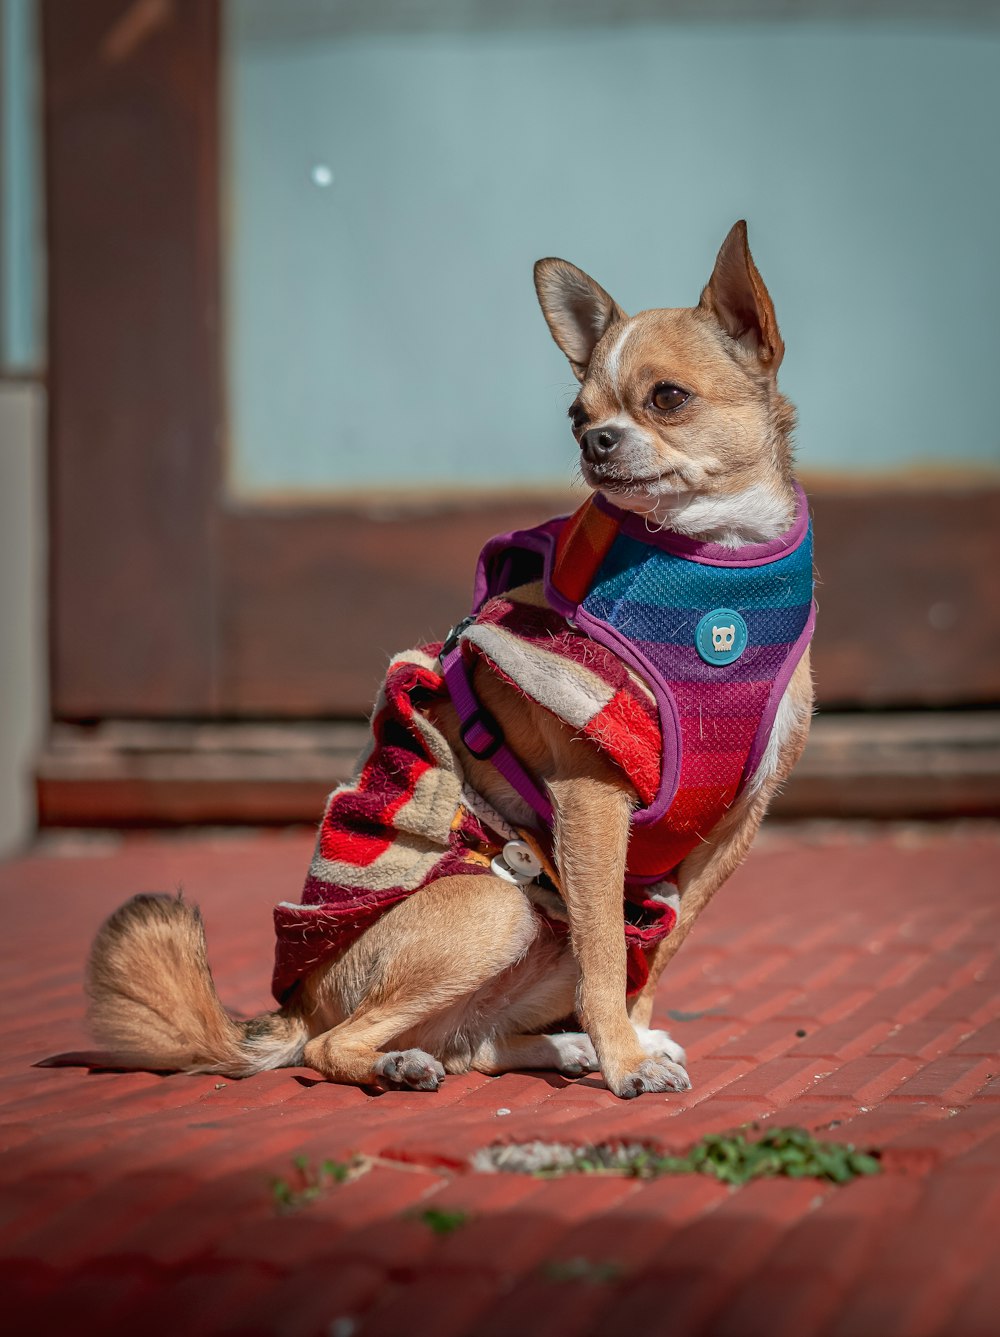 스웨터를 입은 작은 개가 땅에 앉아 있다